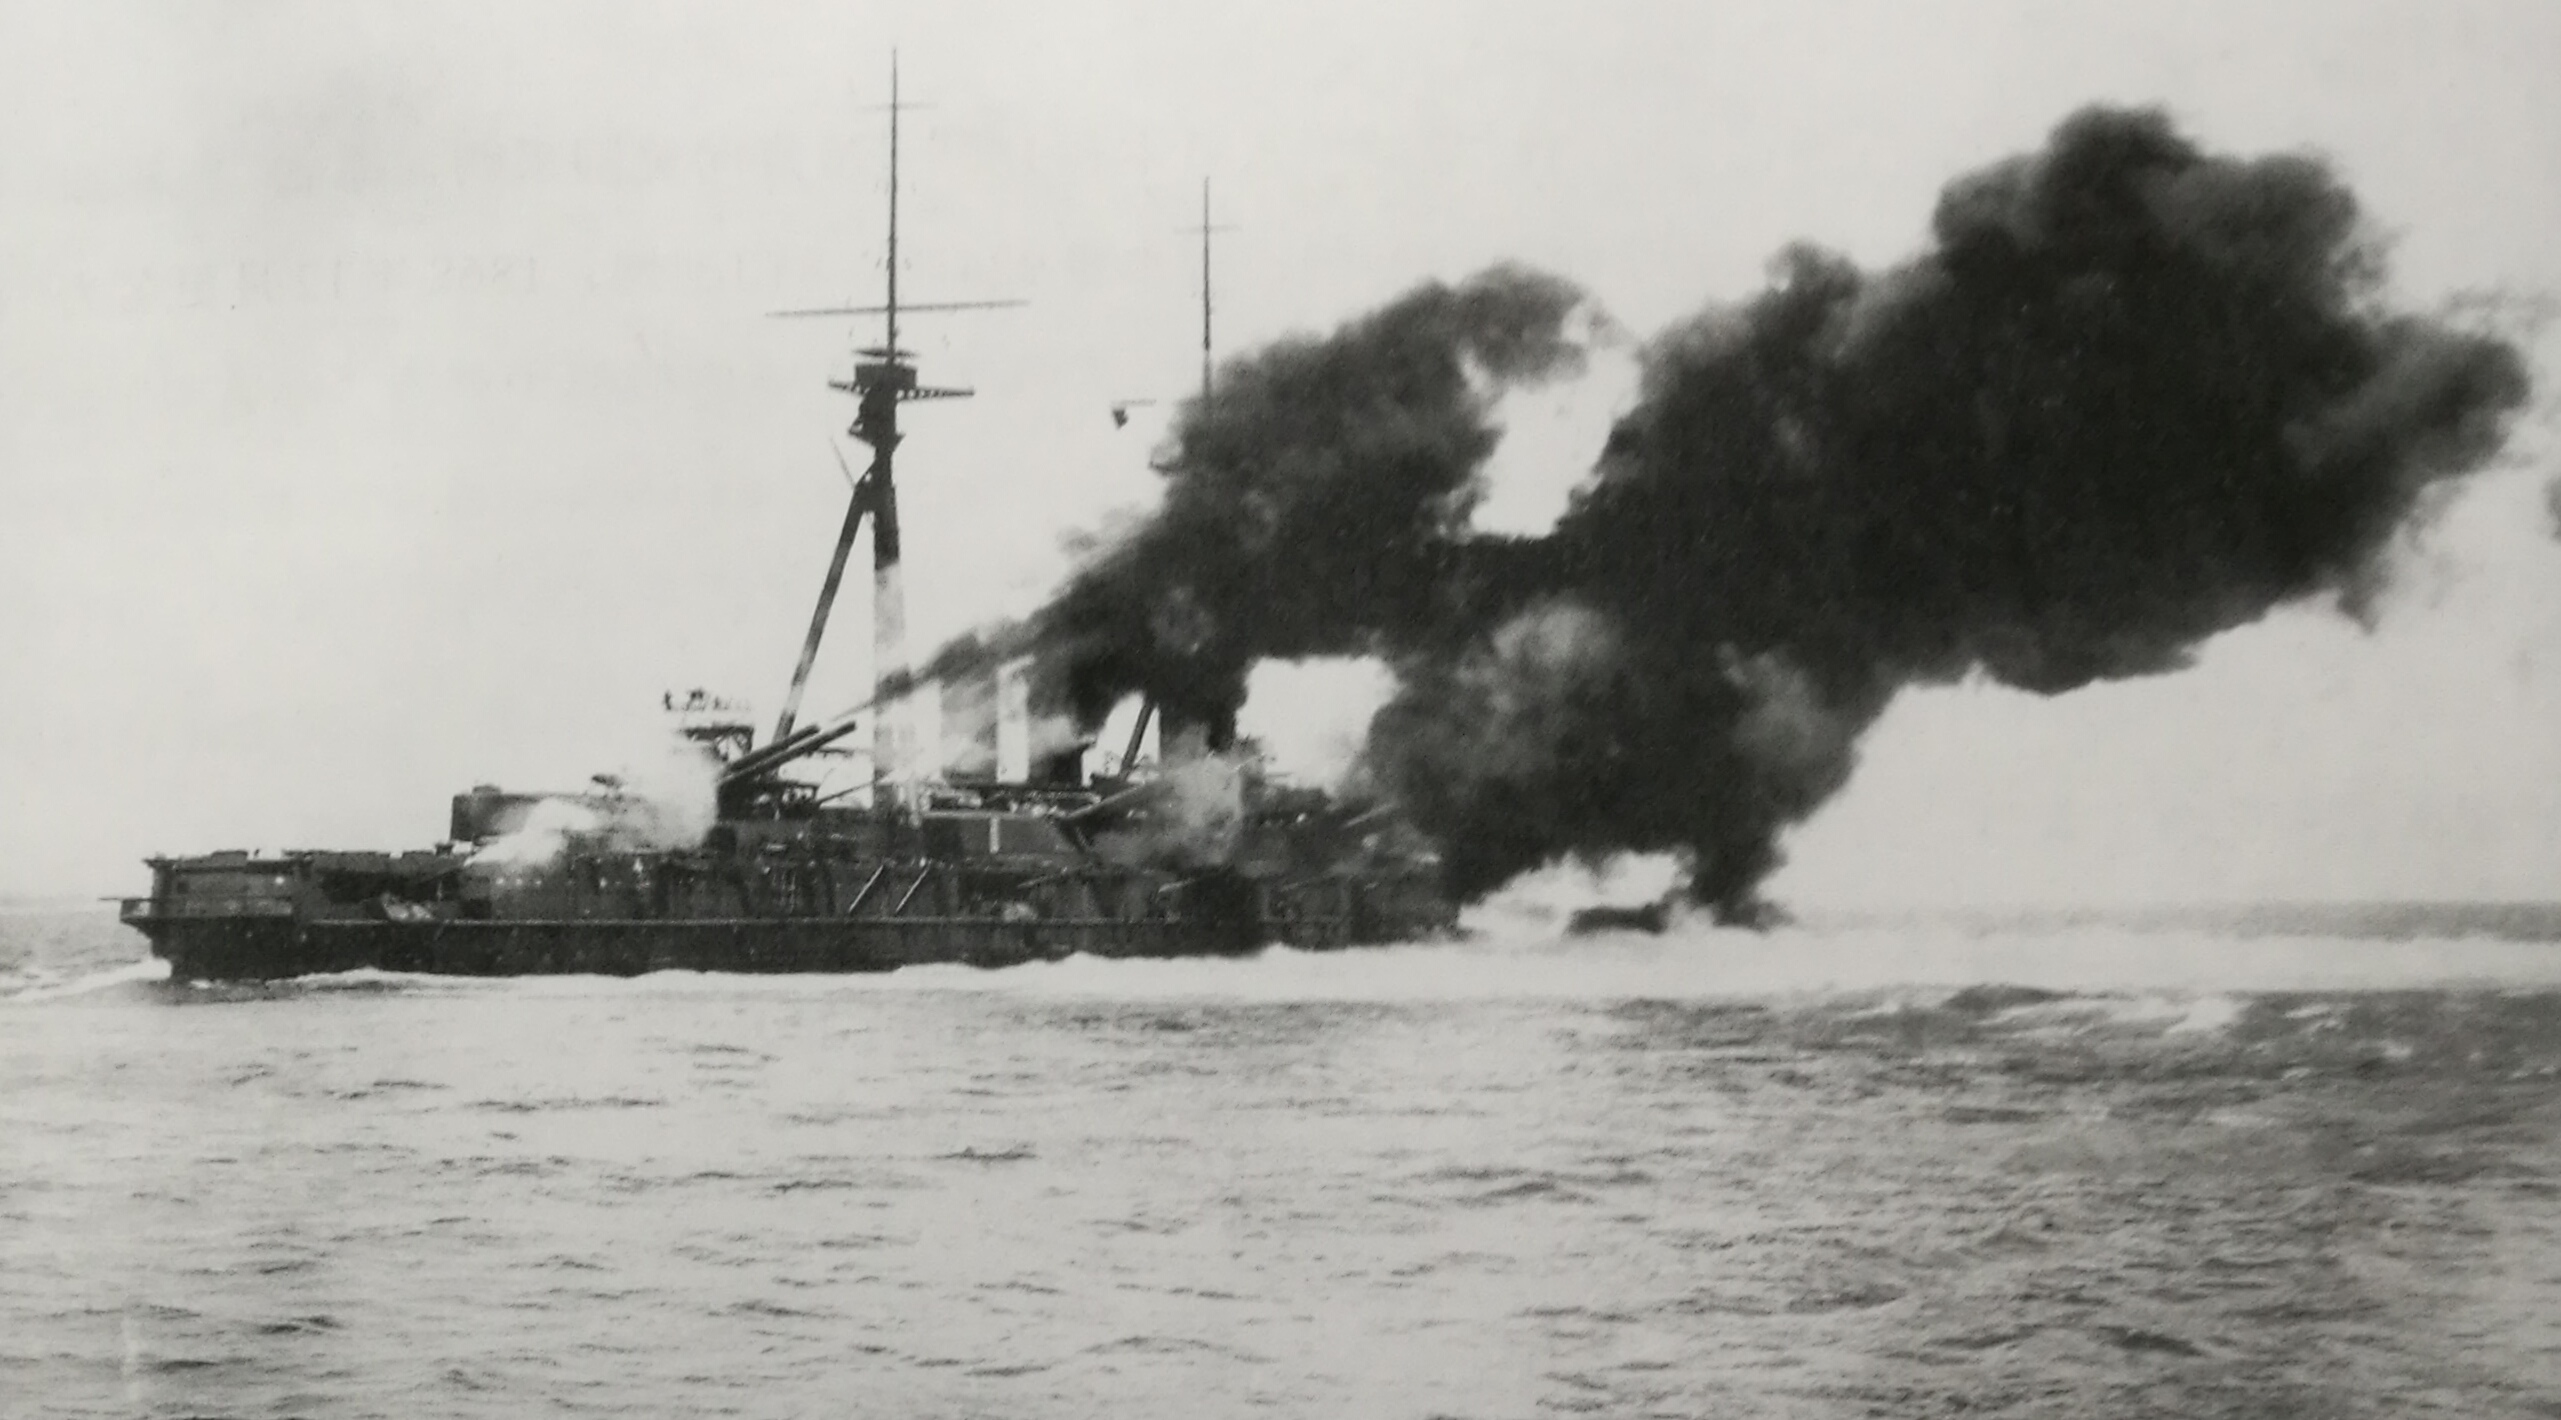 攝津，1919年10月28日閱艦典禮上為天皇的座艦